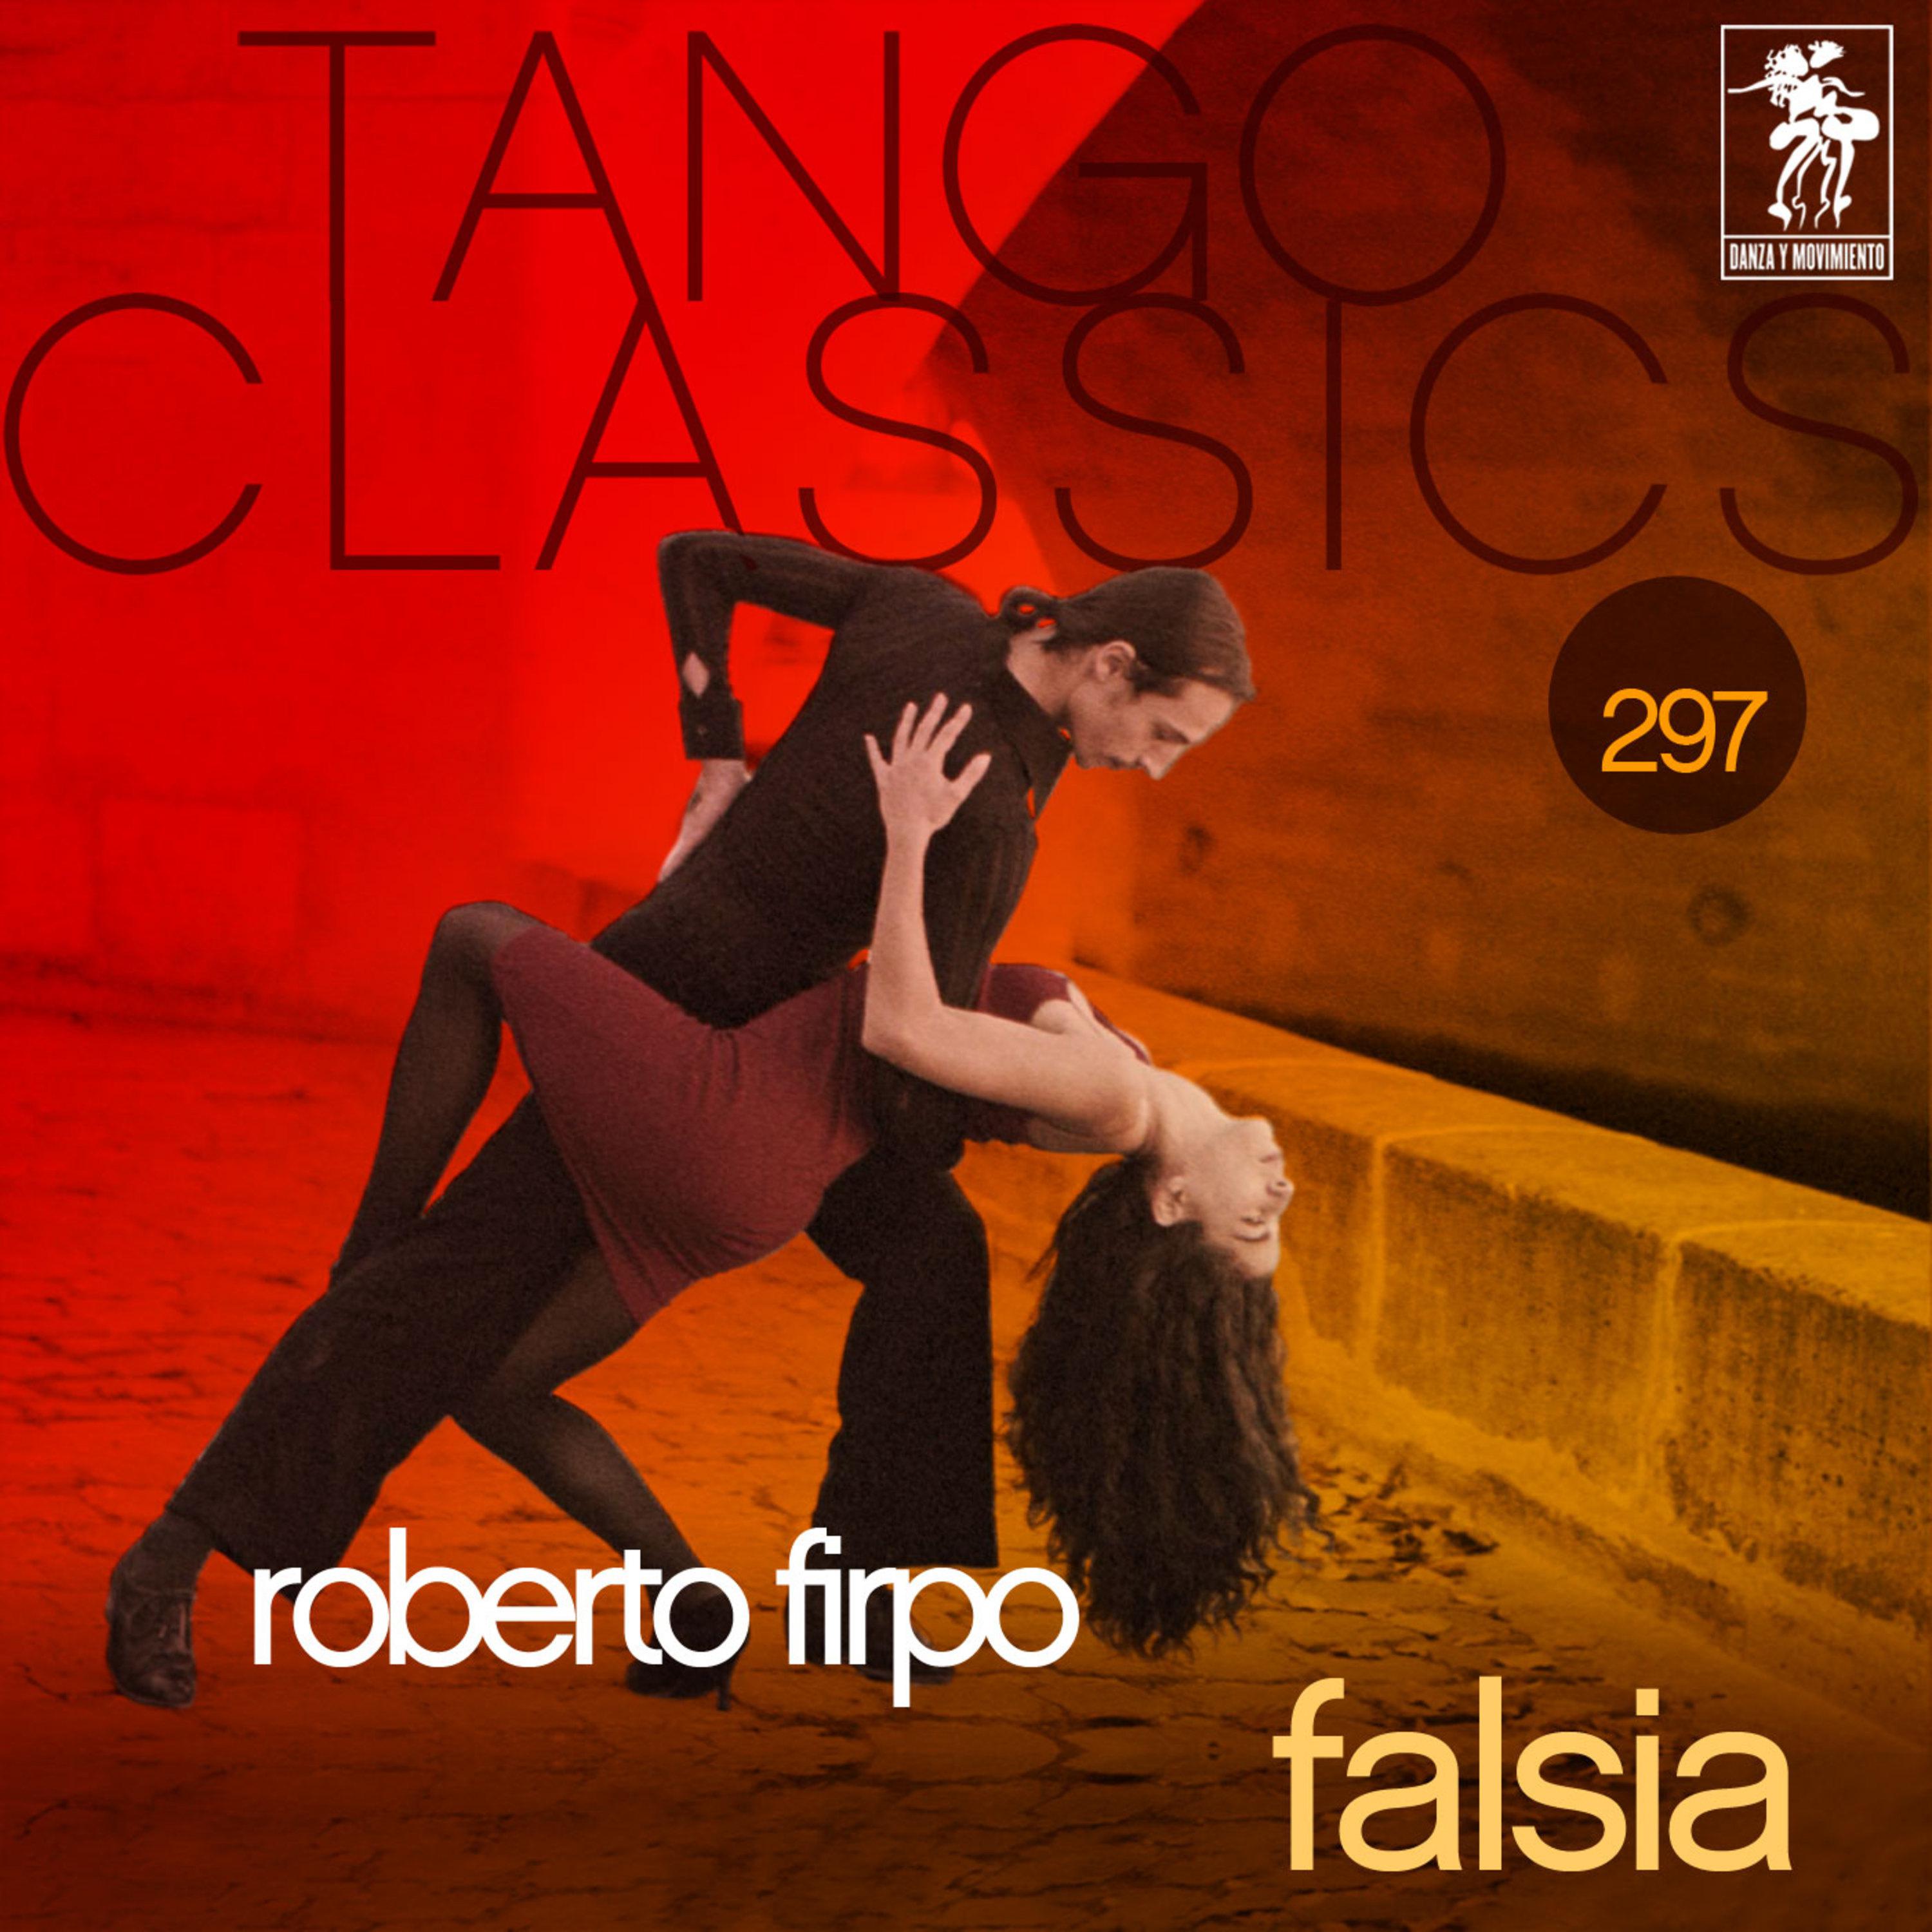 Tango Classics 297: Falsia